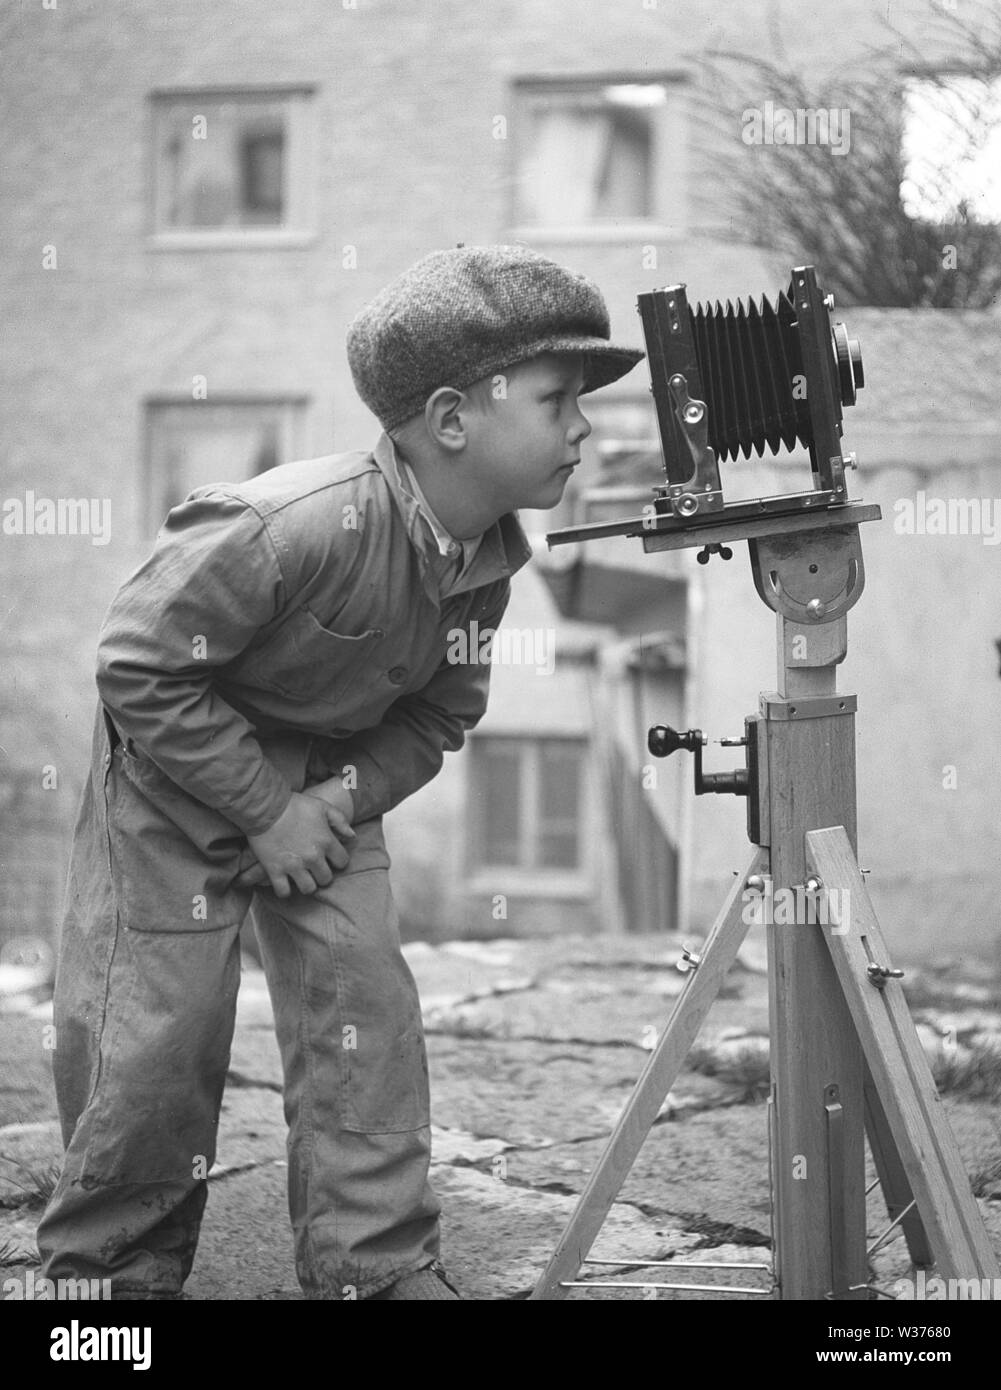 Ragazzo in 1940s. Un bambino curioso sta cercando una telecamera montata su un treppiede. La Svezia 1945. Kristoffersson Ref N107-5 Foto Stock